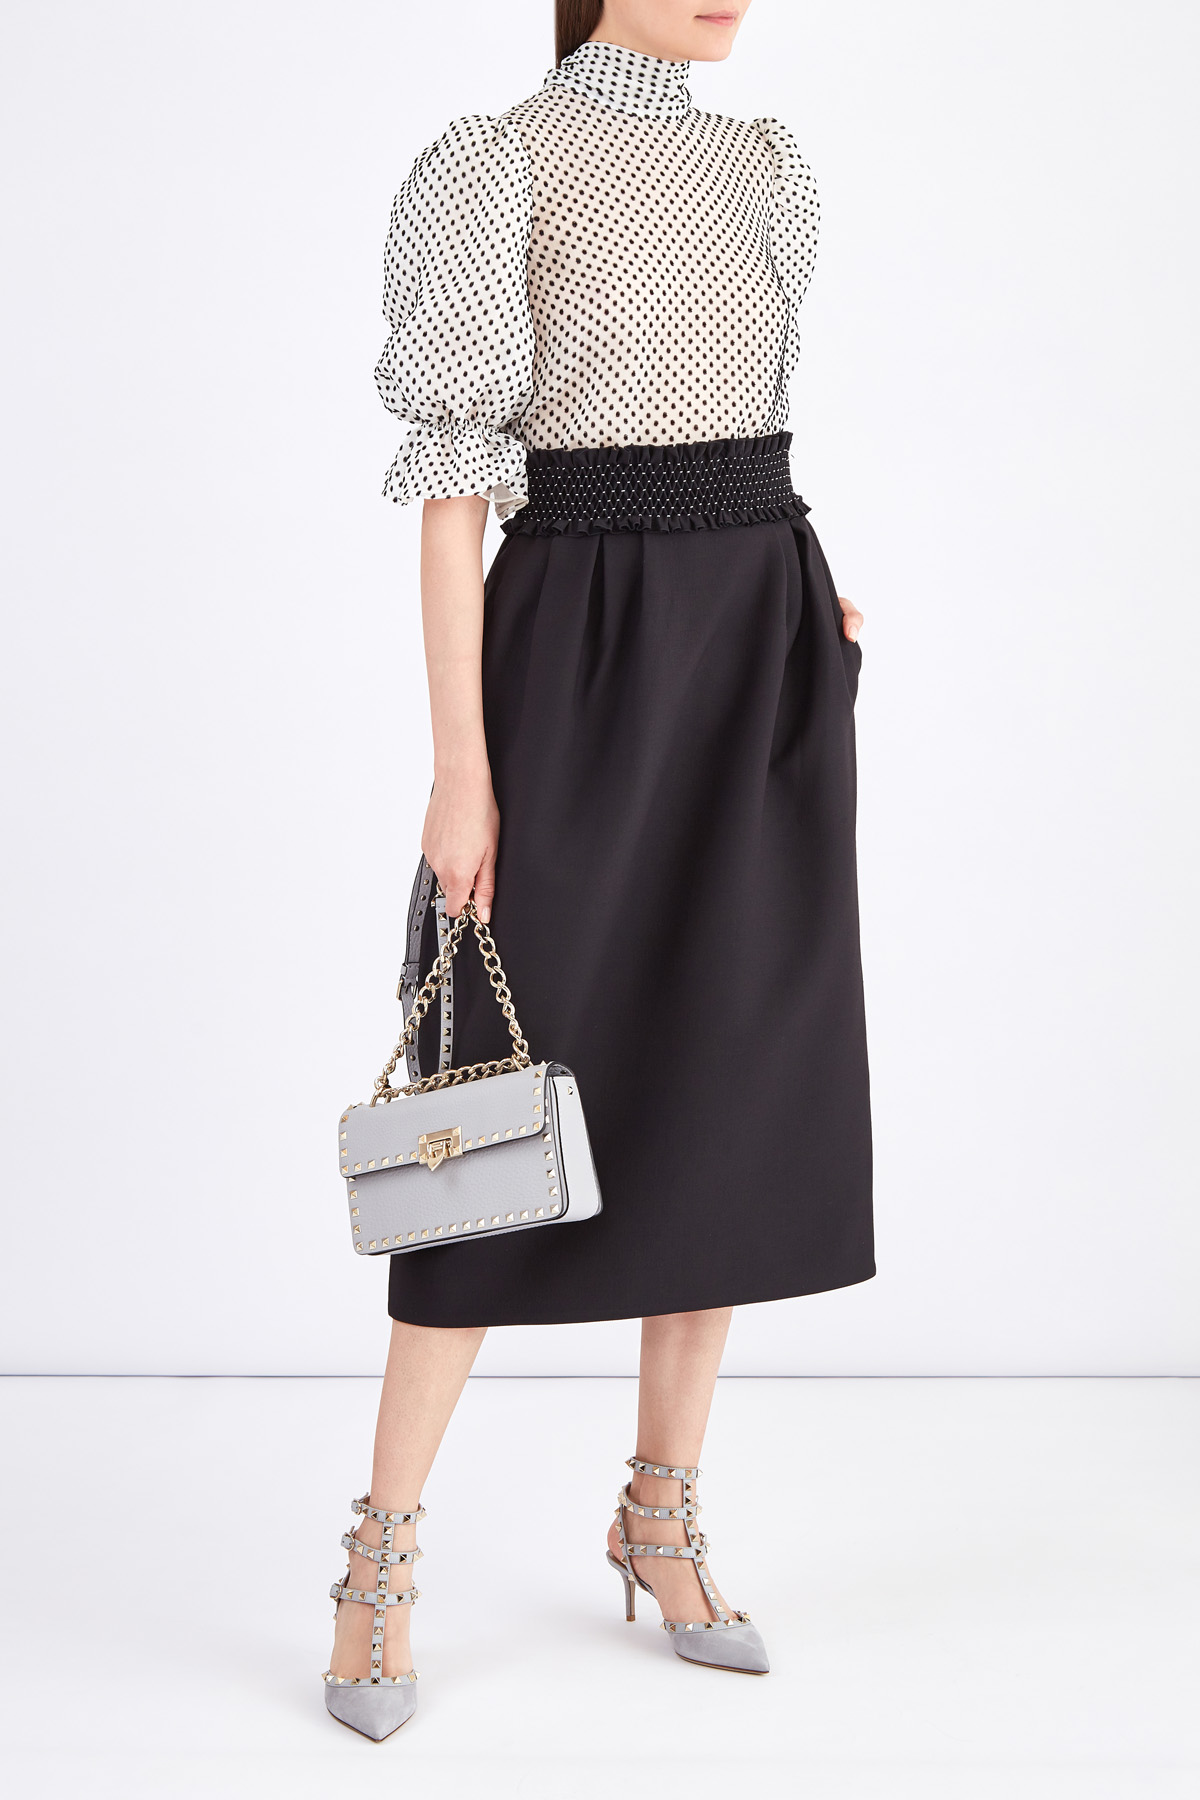 Черная юбка-колокол длины миди с фактурным поясом ручной отделки VALENTINO, цвет черный, размер 42 - фото 2